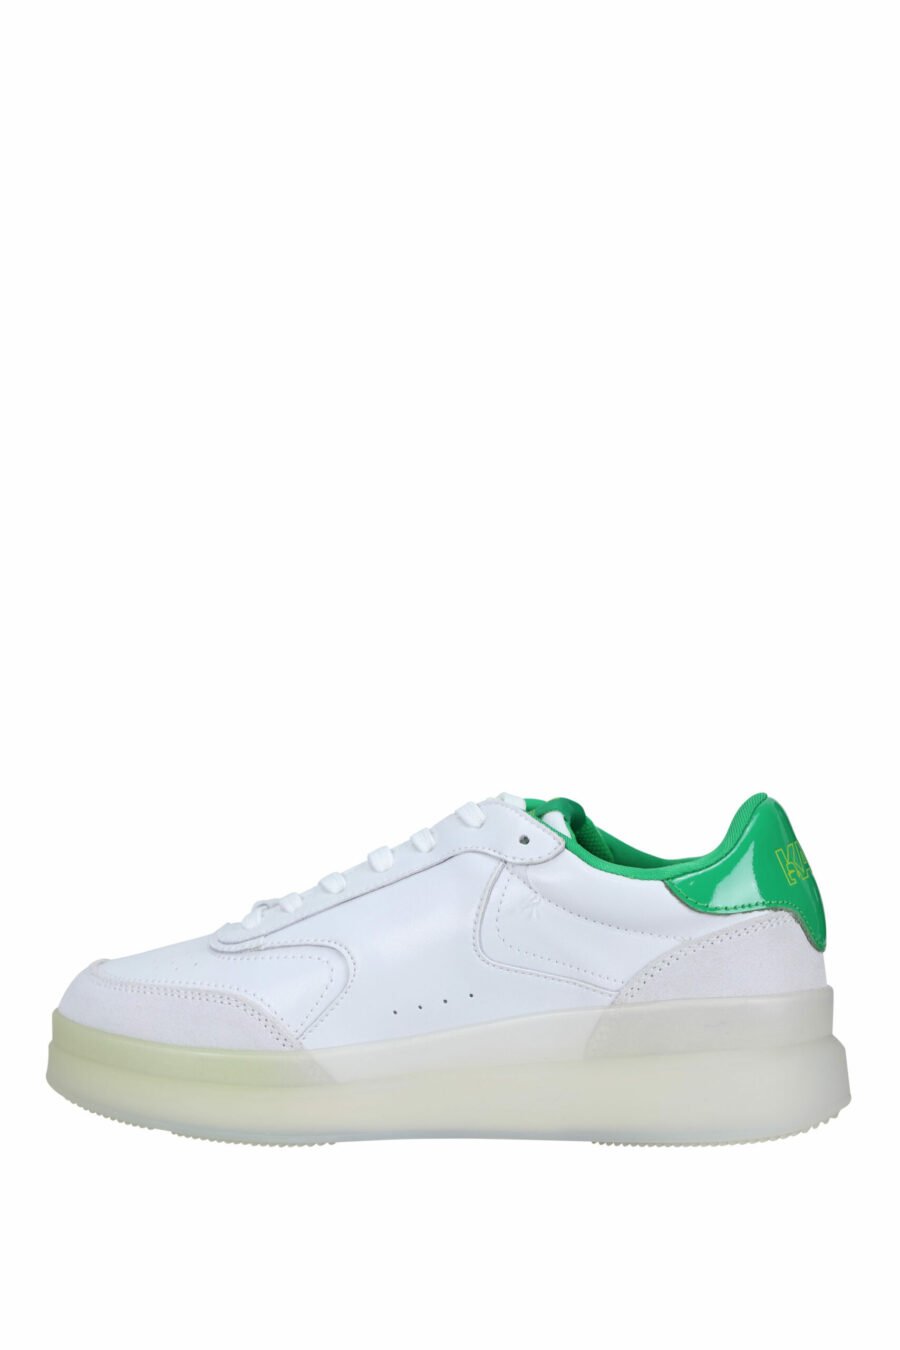 Zapatillas blancas y gris "brink" con detalles verdes - 5059529294495 2 scaled